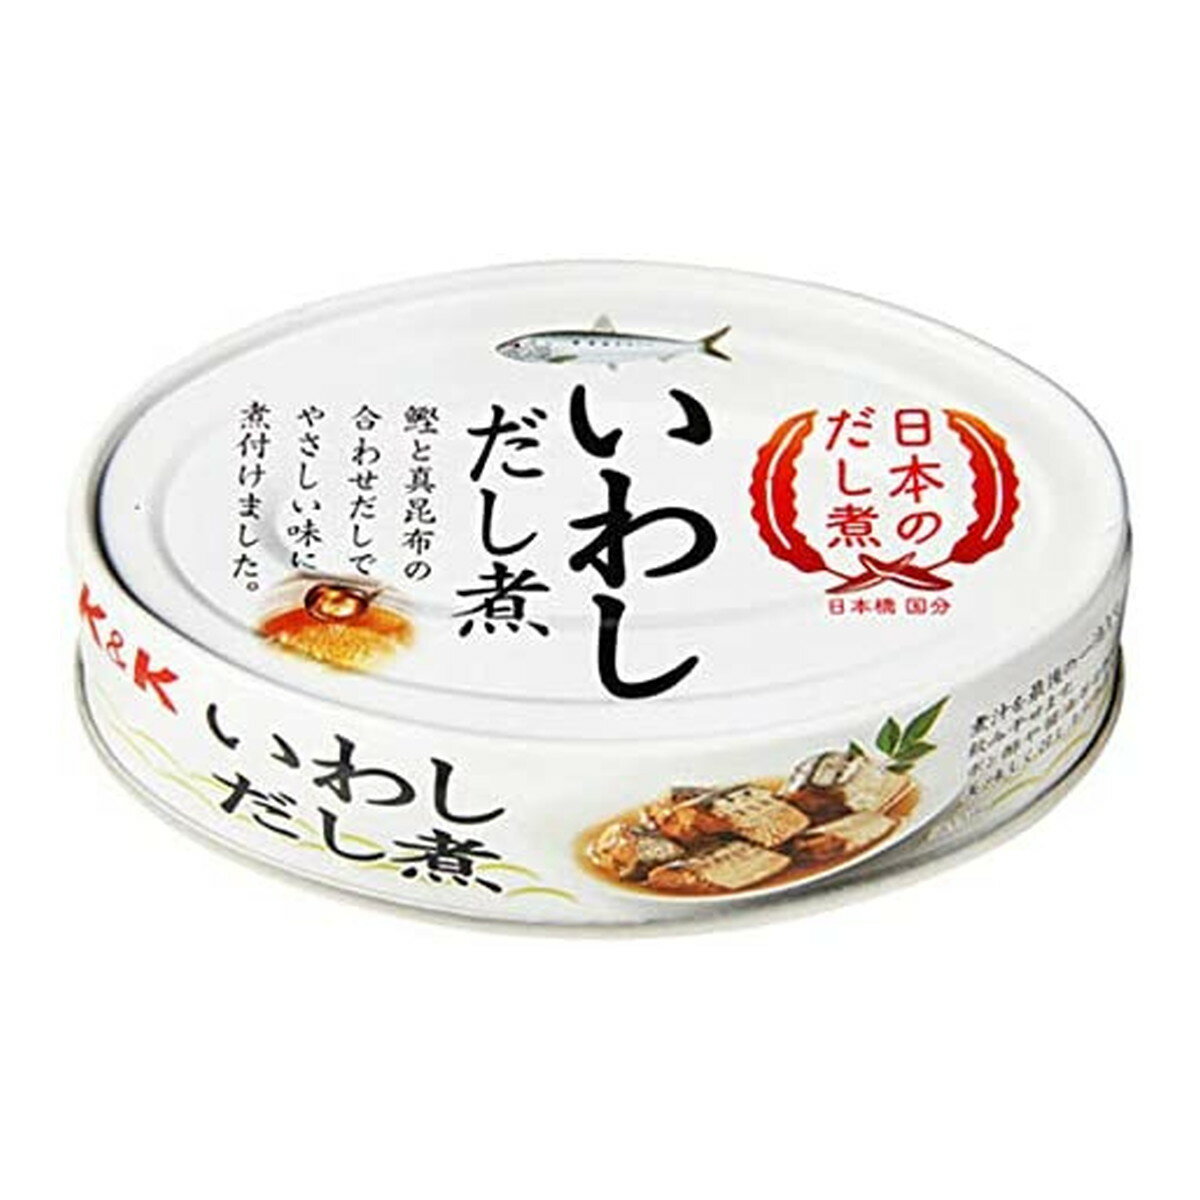 商品名：国分 K&K 日本のだし煮 いわしだし煮 100g EO缶OV120内容量：100gJANコード：4901592921482発売元、製造元、輸入元又は販売元：国分グループ本社株式会社原産国：日本商品番号：101-c001-4901592921482商品説明「だし」のうま味だけで味付けした、国産の魚缶詰。国内で水揚げされたいわしを、鰹と真昆布でやさしい味付けに煮付けました。広告文責：アットライフ株式会社TEL 050-3196-1510 ※商品パッケージは変更の場合あり。メーカー欠品または完売の際、キャンセルをお願いすることがあります。ご了承ください。